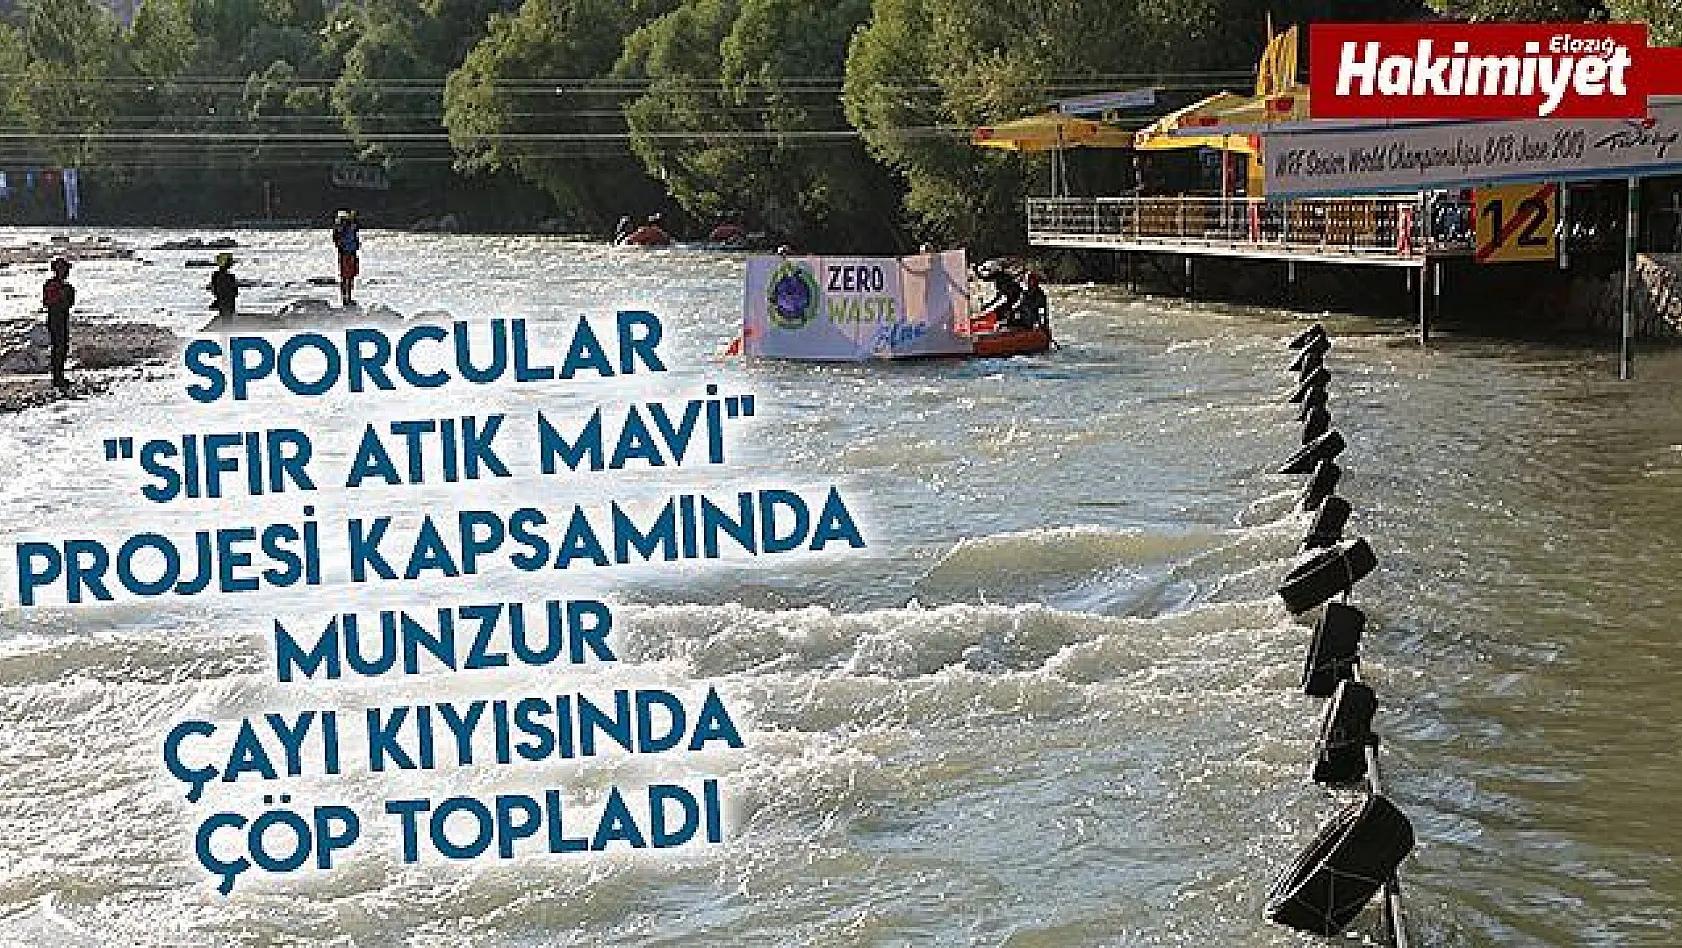 Tunceli'de 800 Sporcu 'Sıfır Atık Mavi' projesine destek verdi